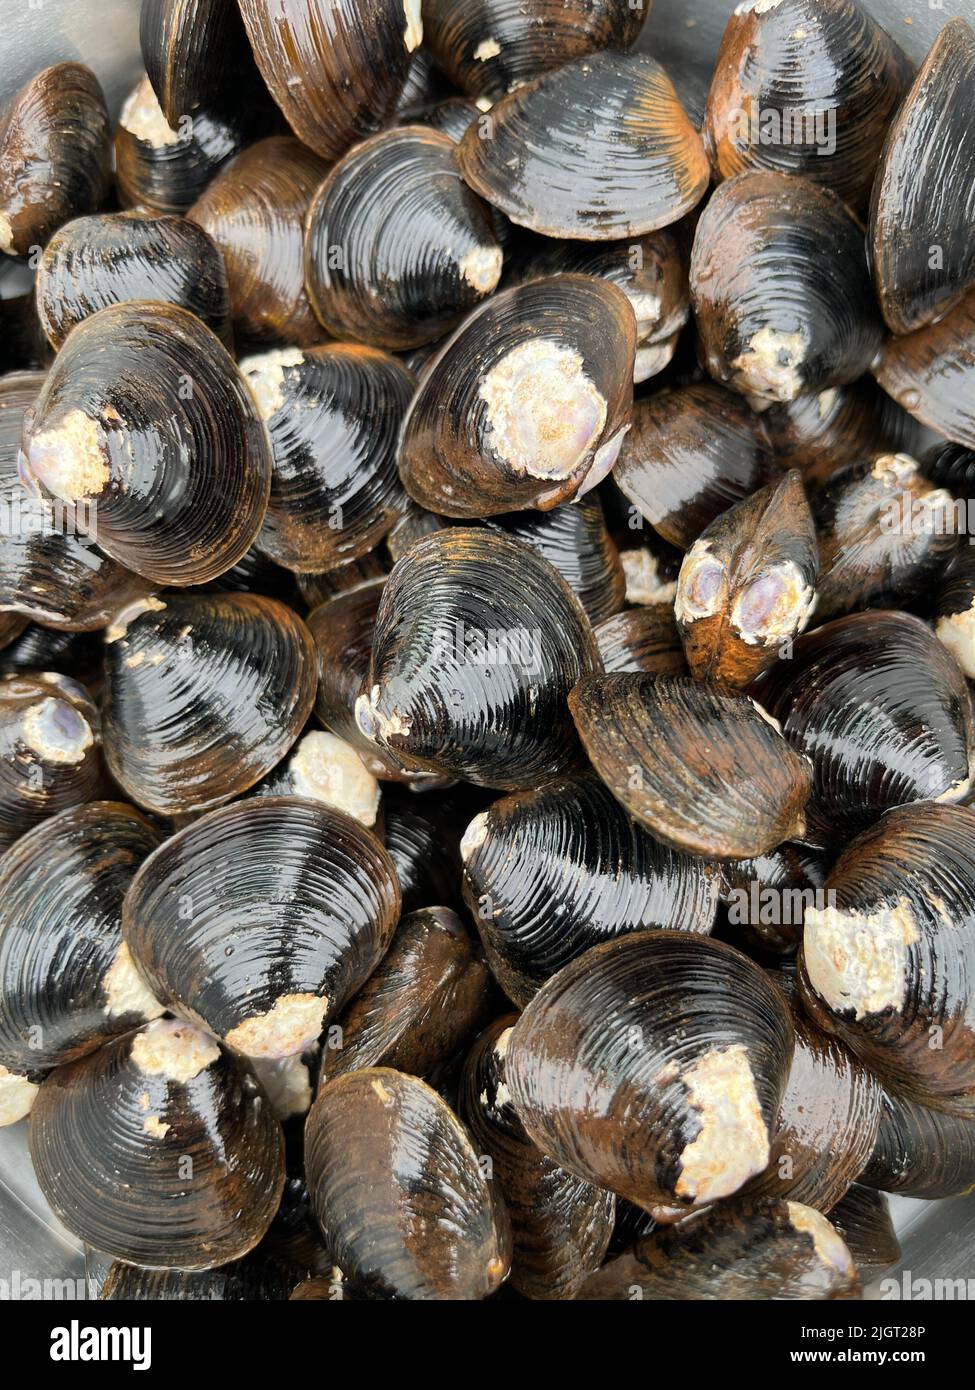 Close up of large Japanese shijimi clams Stock Photo